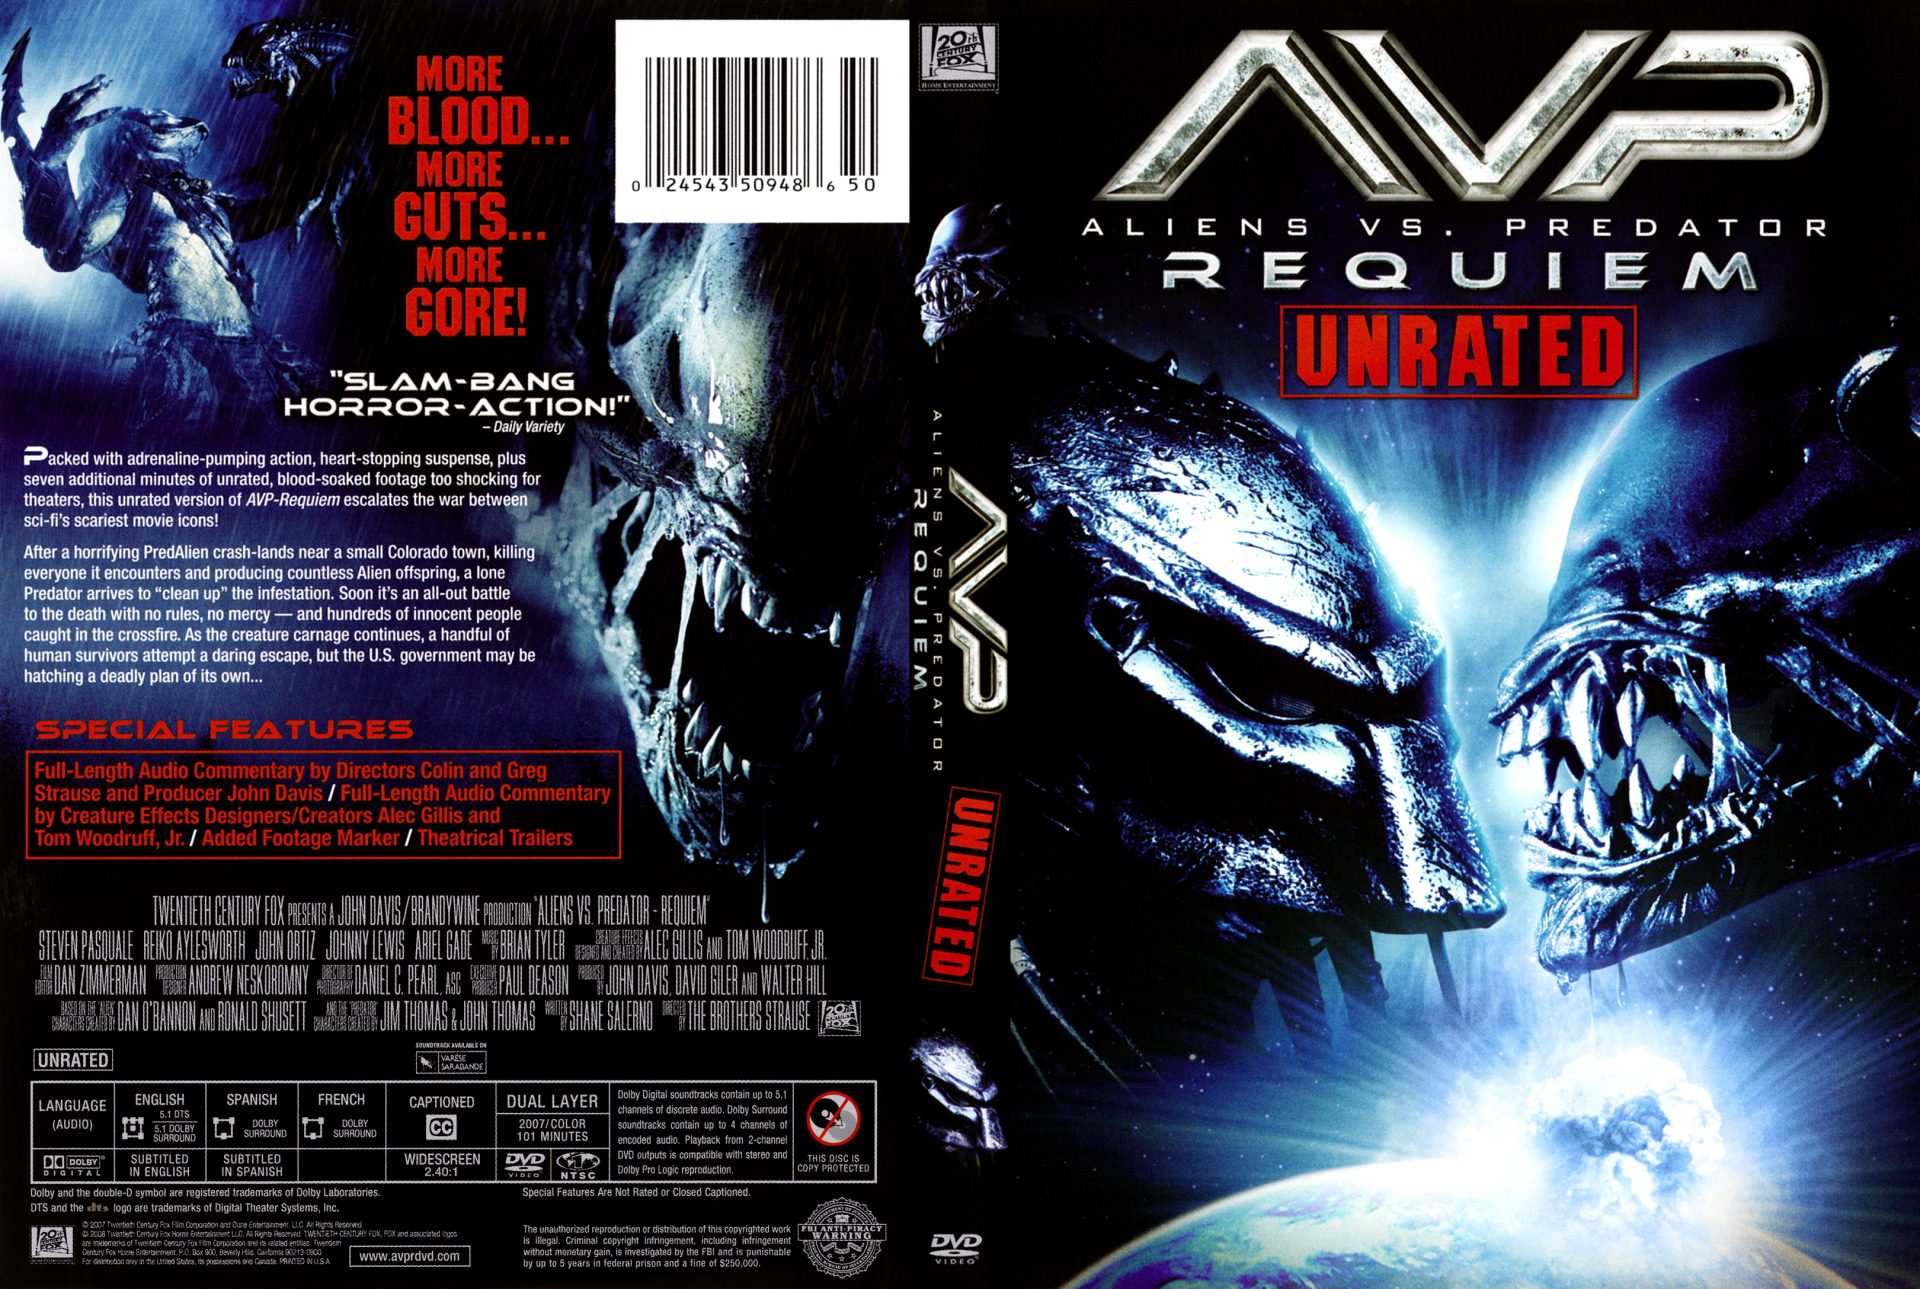 AVP: Alien vs. Predator (2004) - Theatrical Trailer 